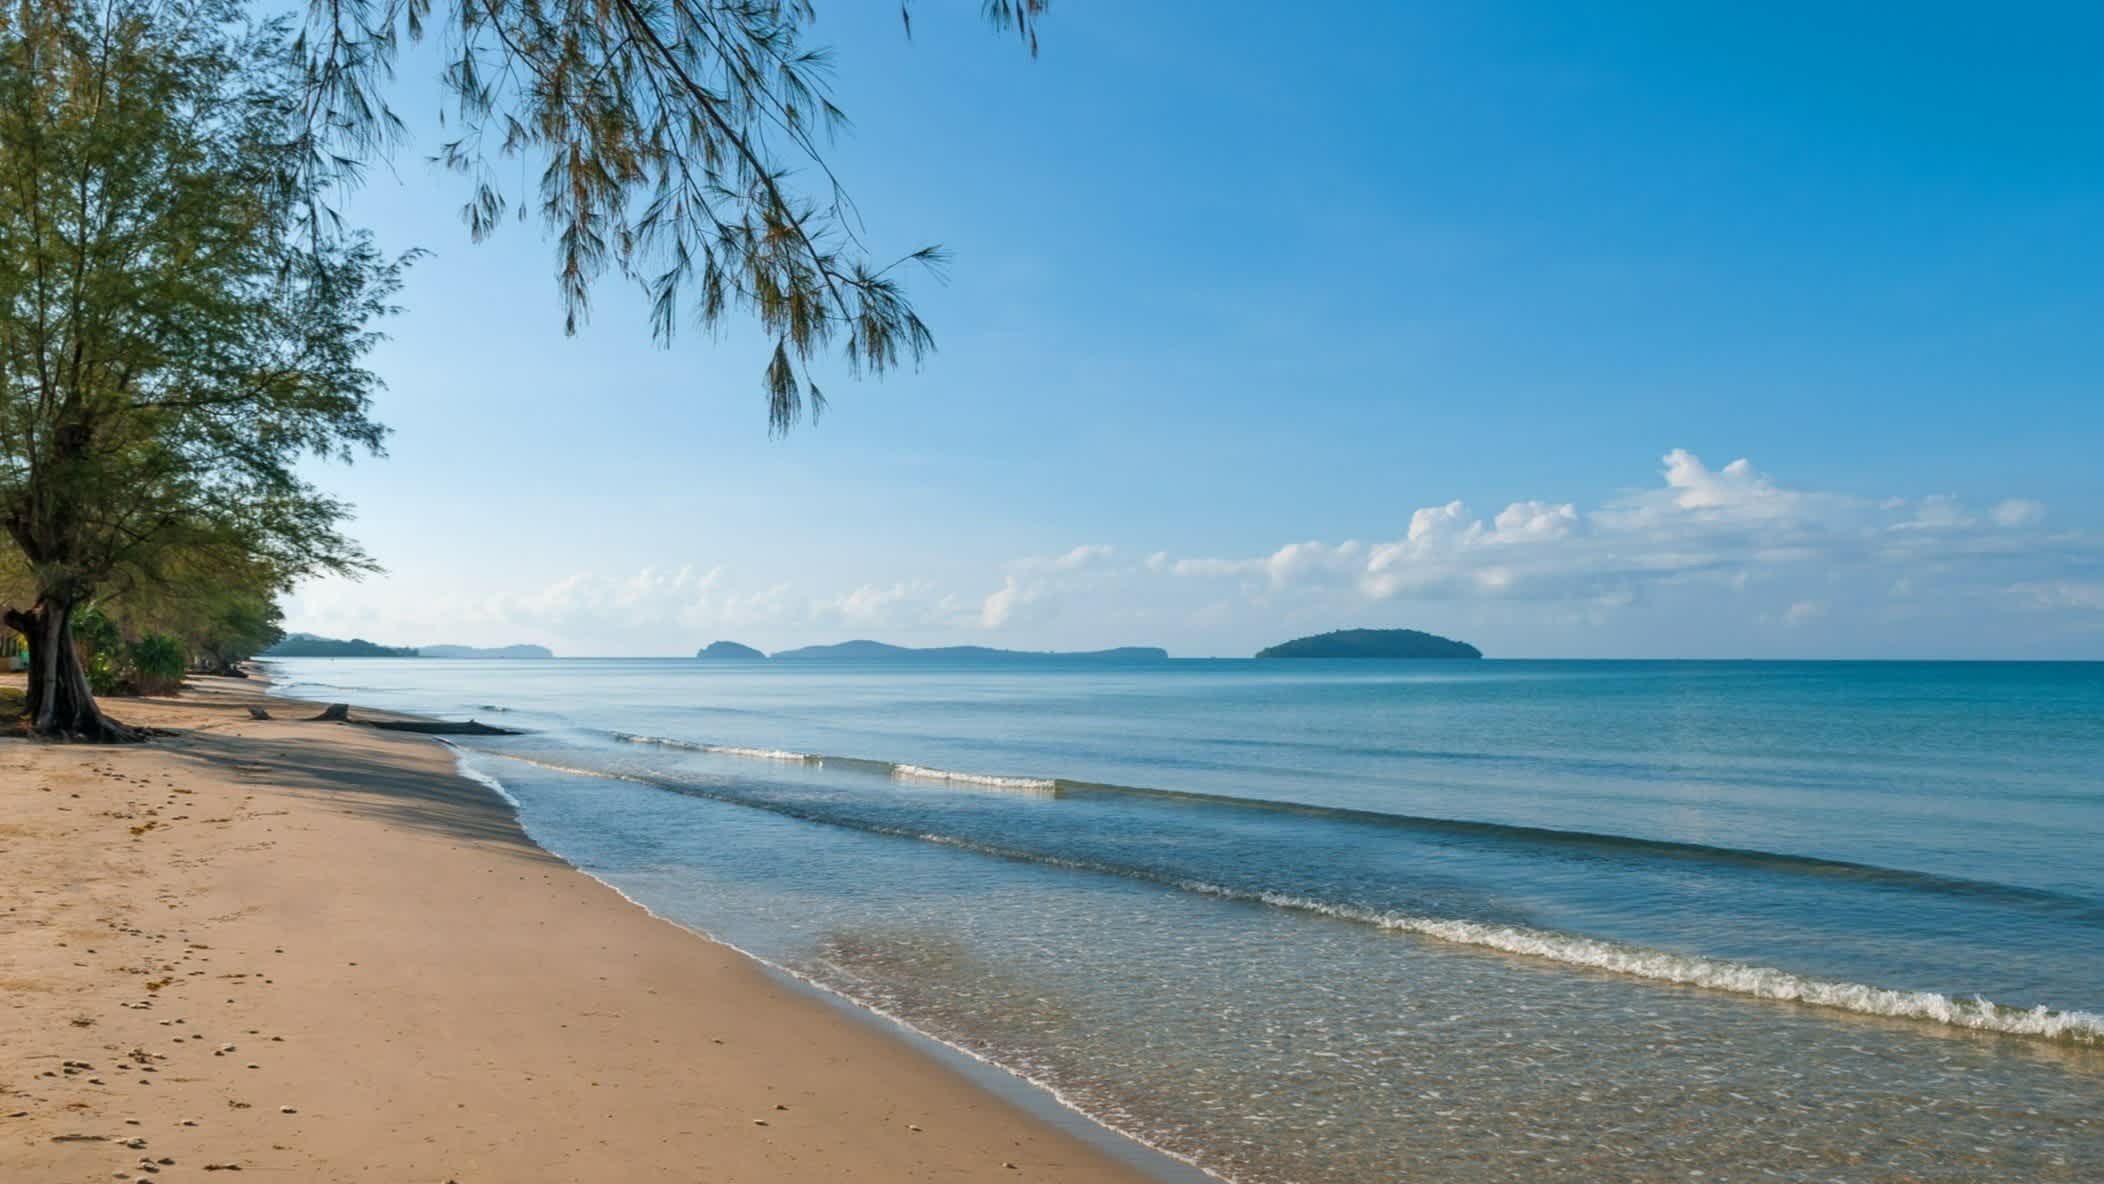 Arbre sur le sable au bord de l'eau claire sur la plage d'Otres au Cambodge